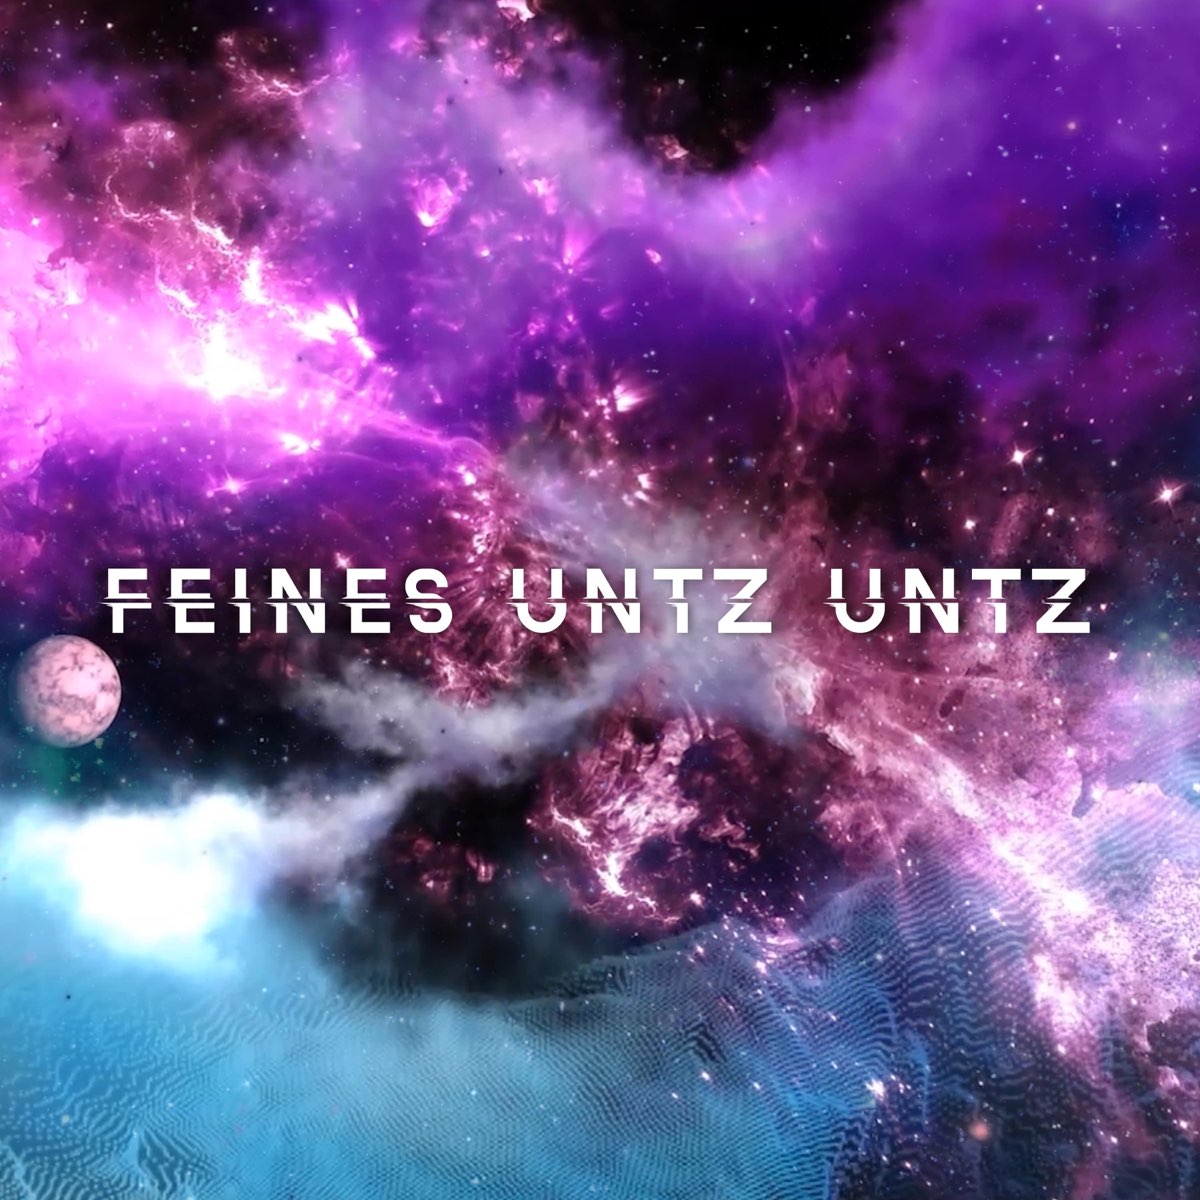 Untz untz dimitri vegas like. Музыкальная Вселенная. Universe песня.